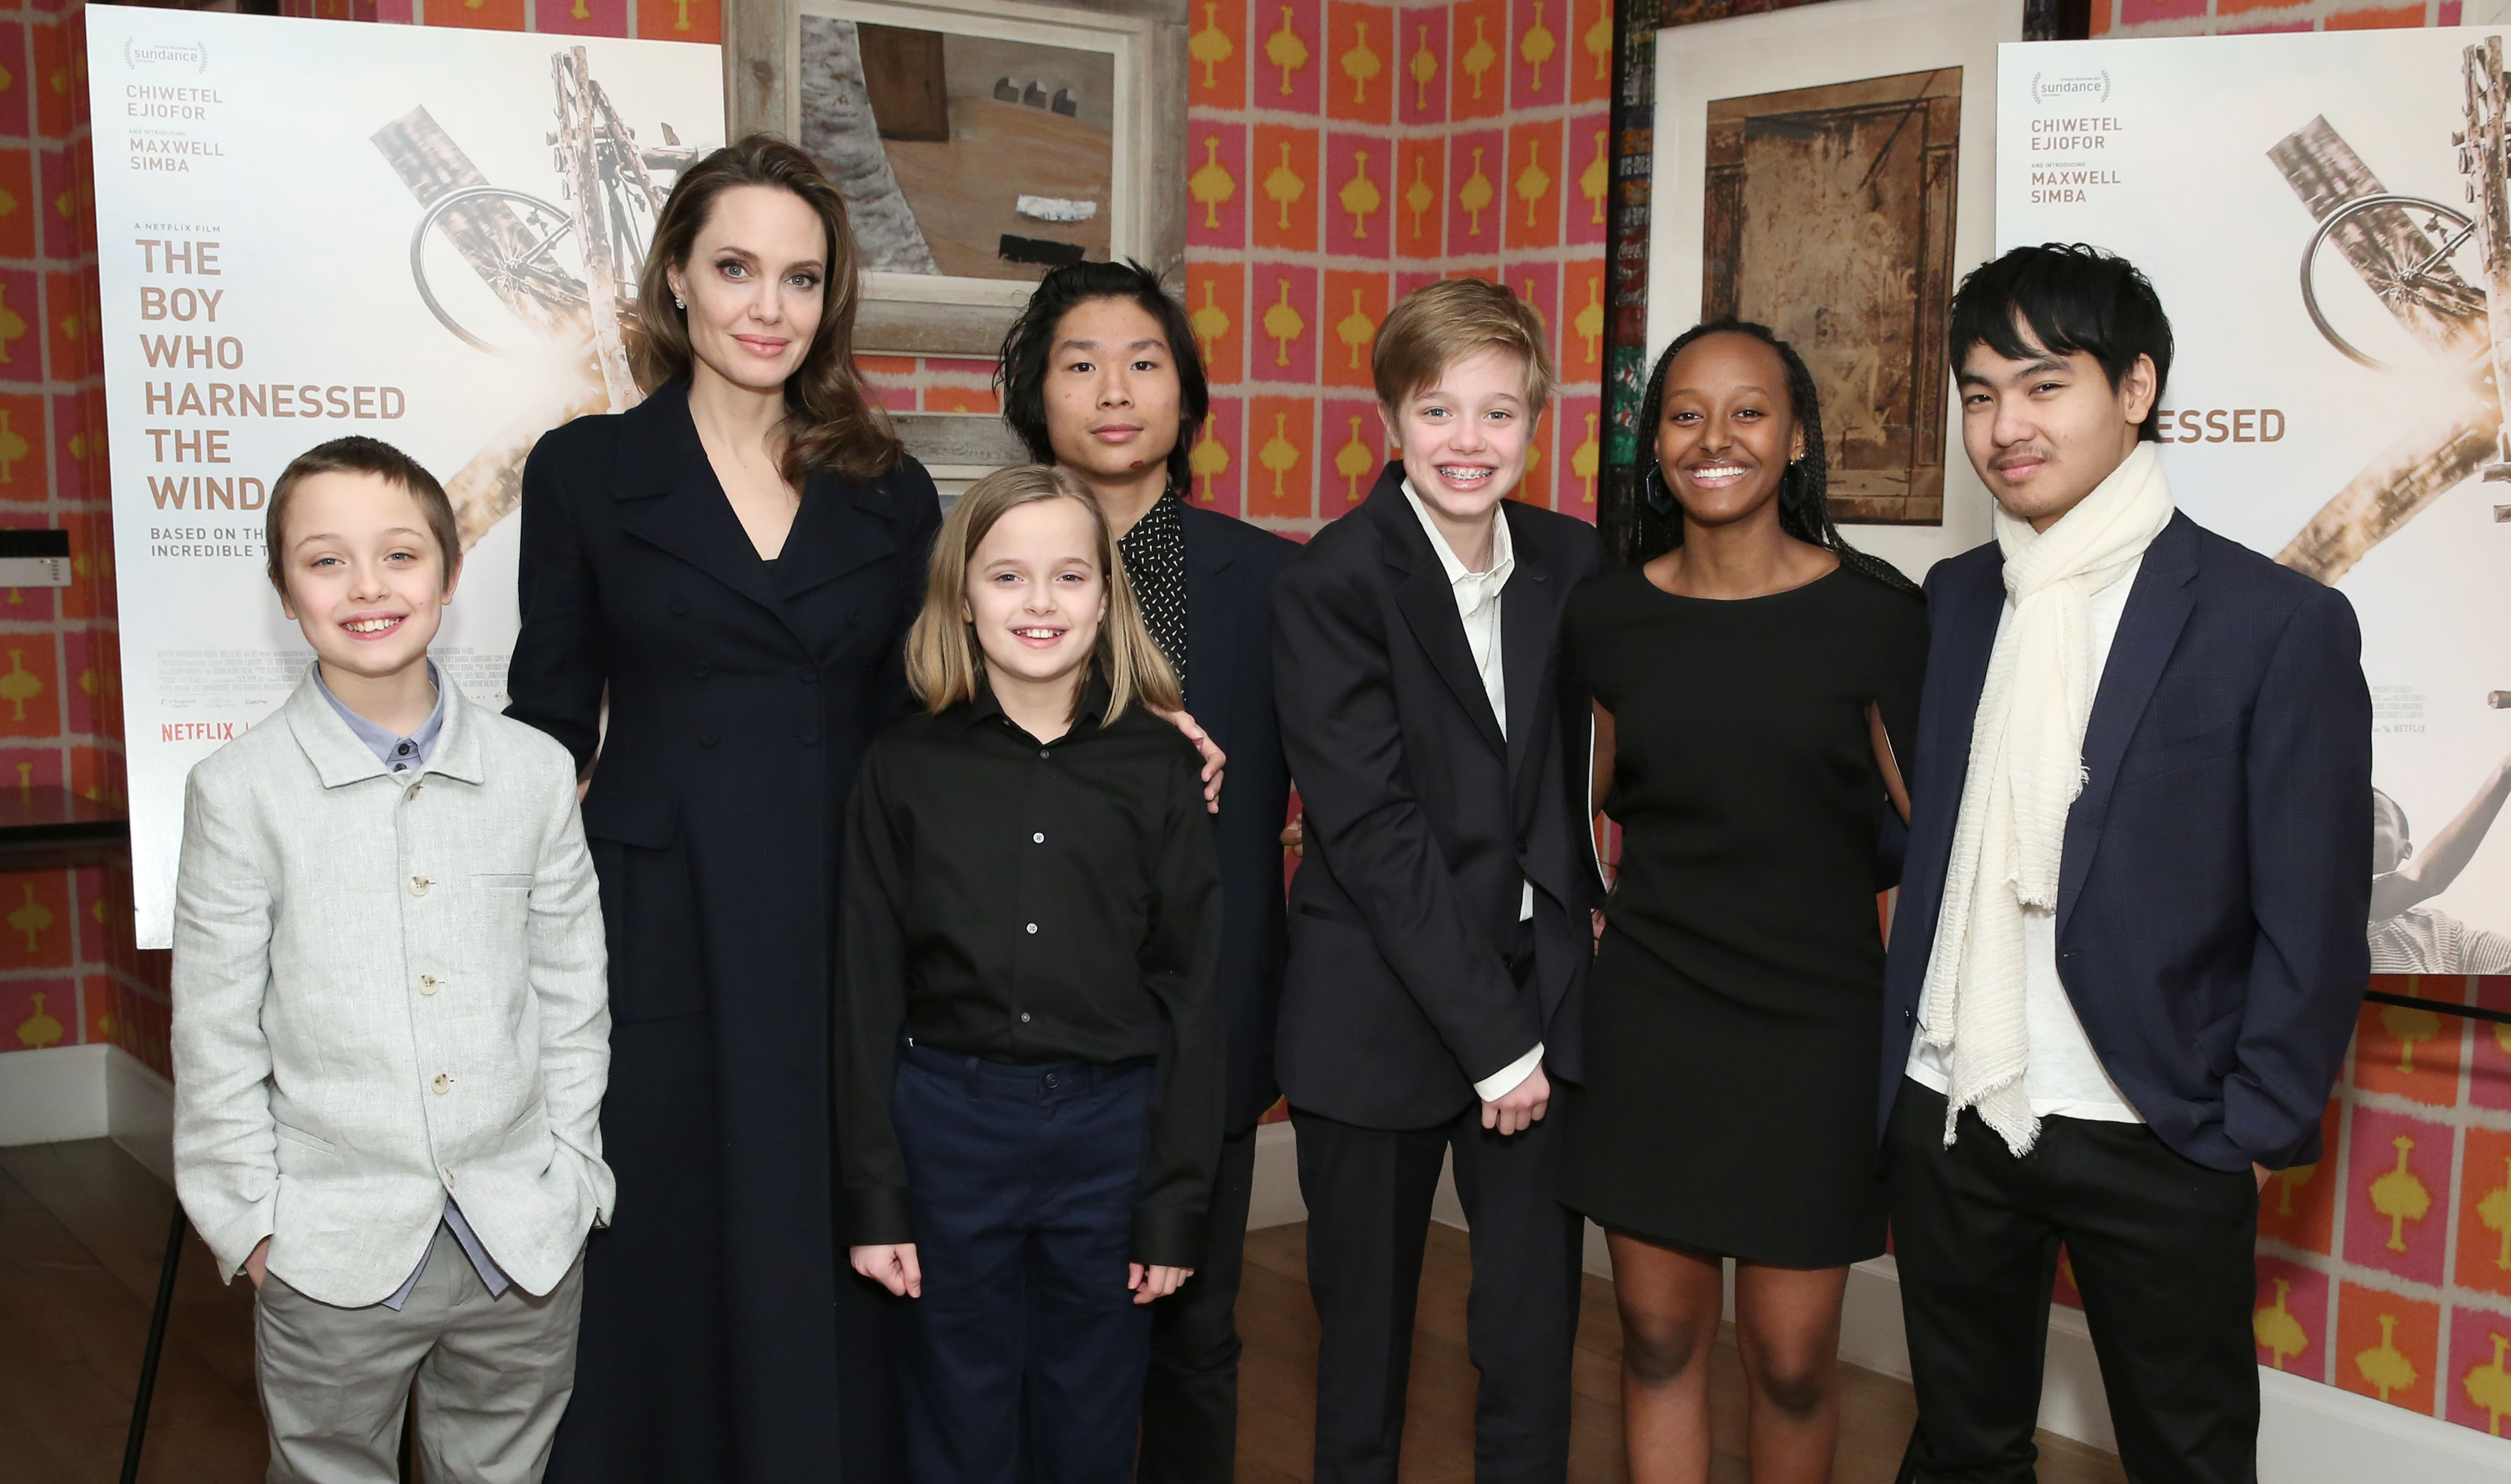 Angelina Jolie mit ihren Kindern Knox, Vivienne, Pax, Shiloh, Zahara und Maddox bei der Vorführung von "The Boy Who Harnessed The Wind" in New York im Jahr 2019 | Quelle: Getty Images